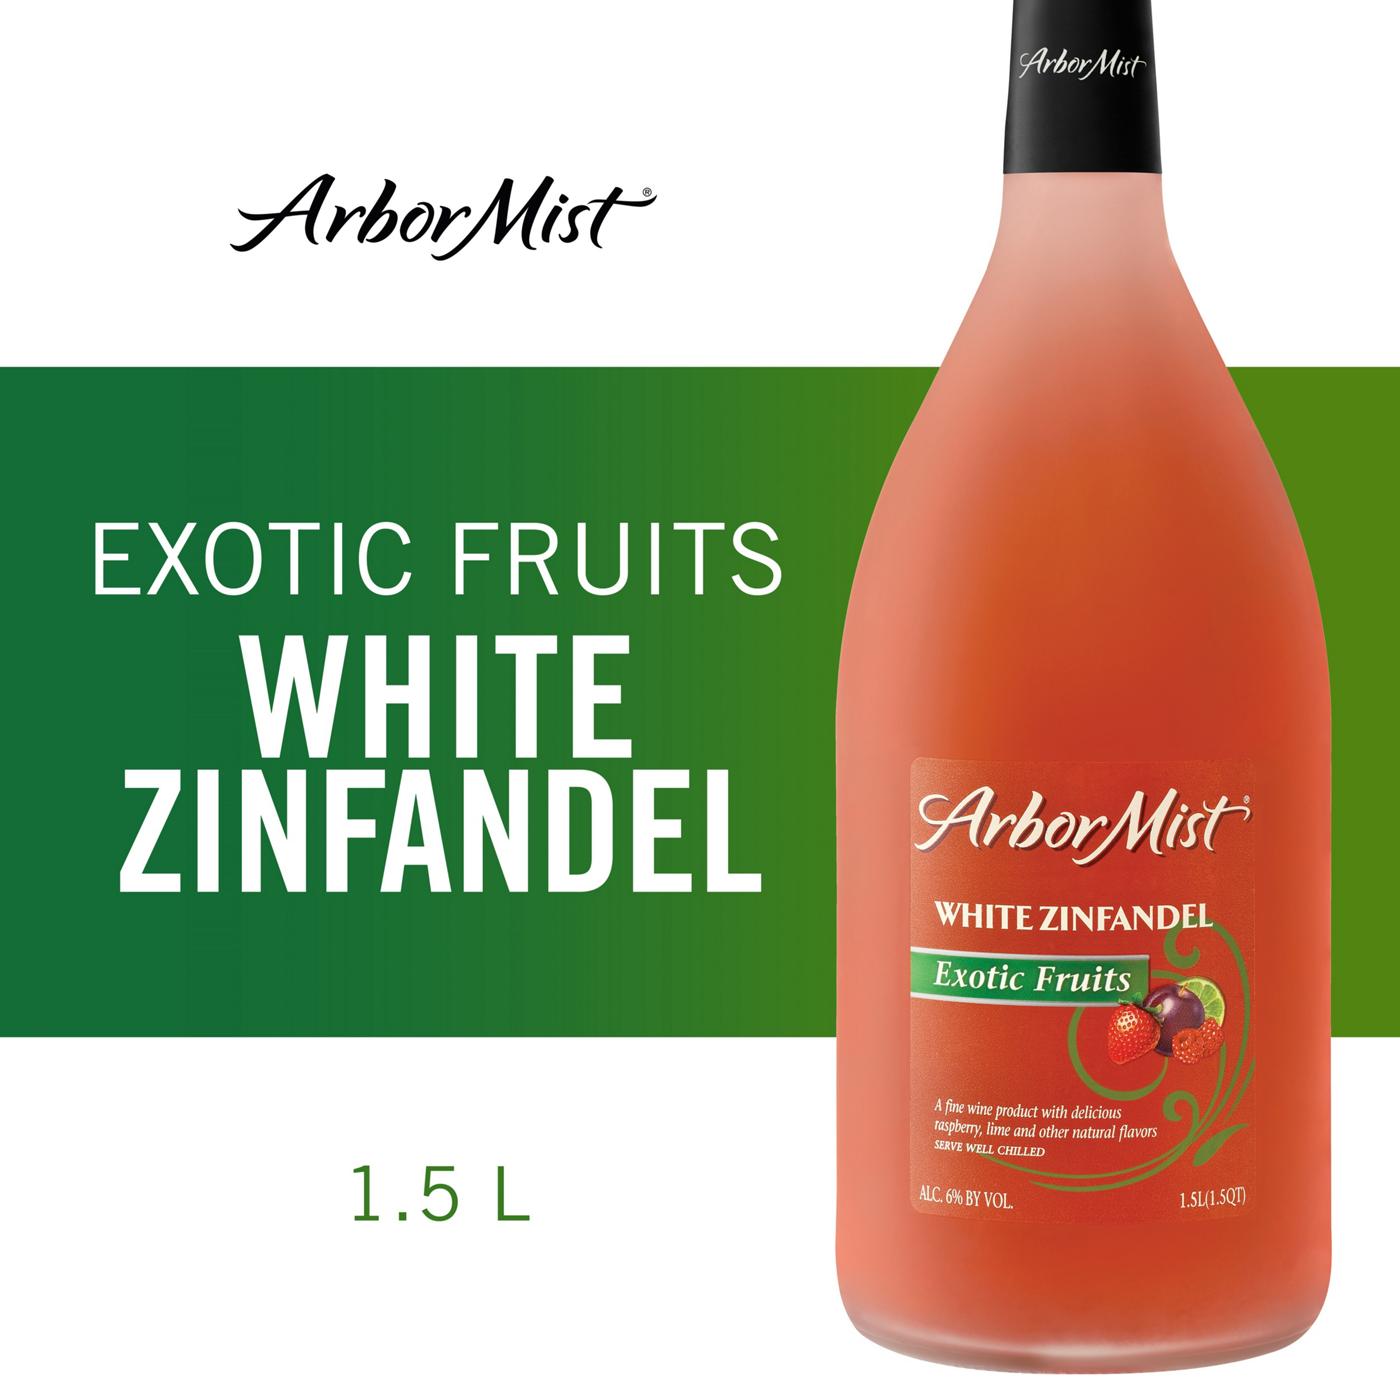 Arbor Mist Exotic Fruits White Zinfandel Wine; image 5 of 5